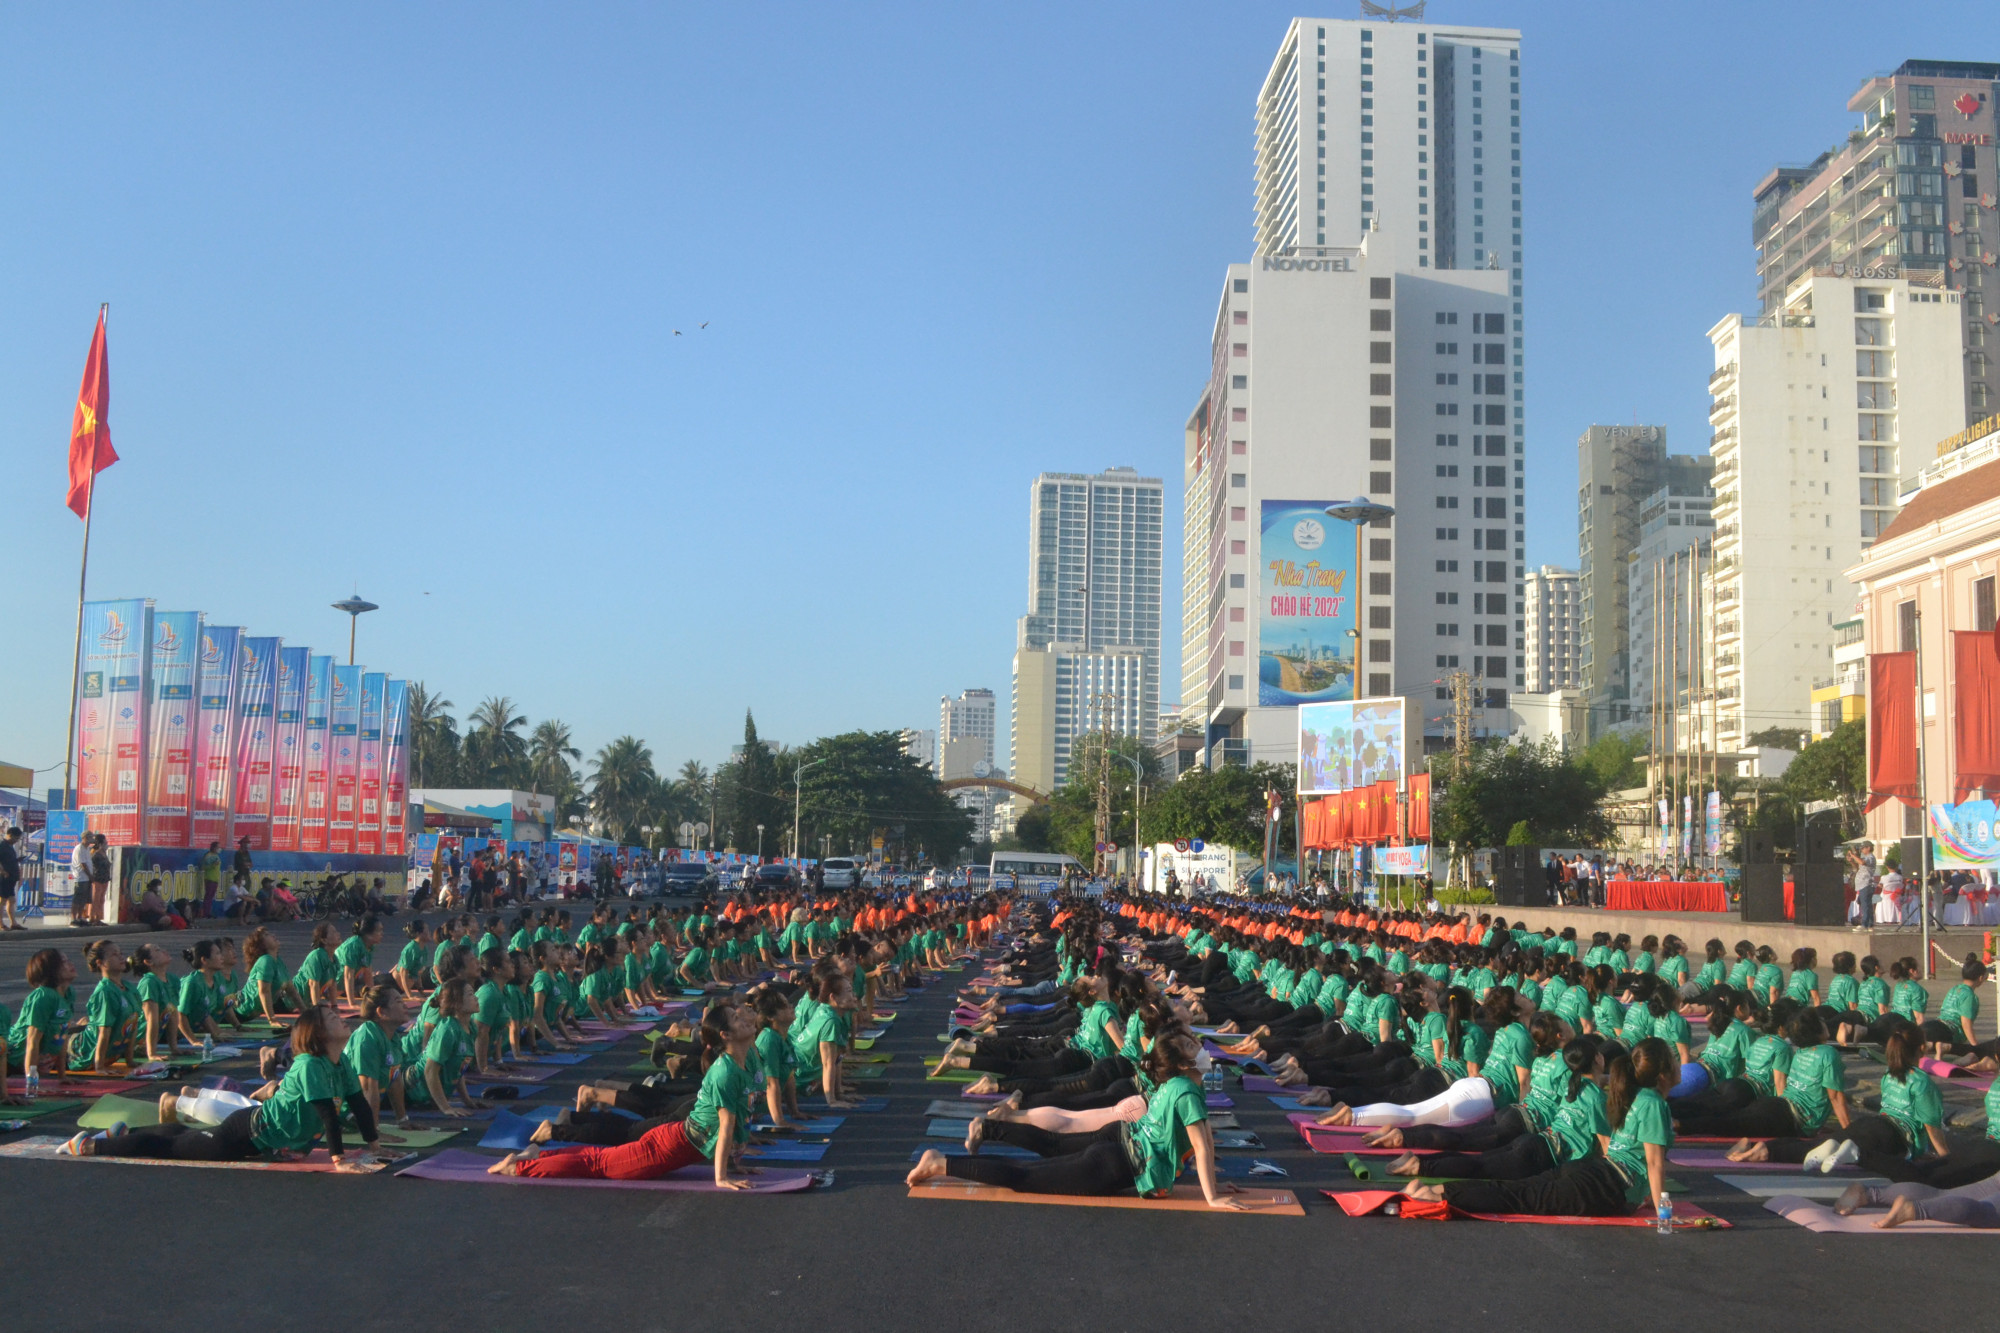 Hơn 1.200 người đã tham gia đồng diễn các động tác cơ bản của bộ môn yoga